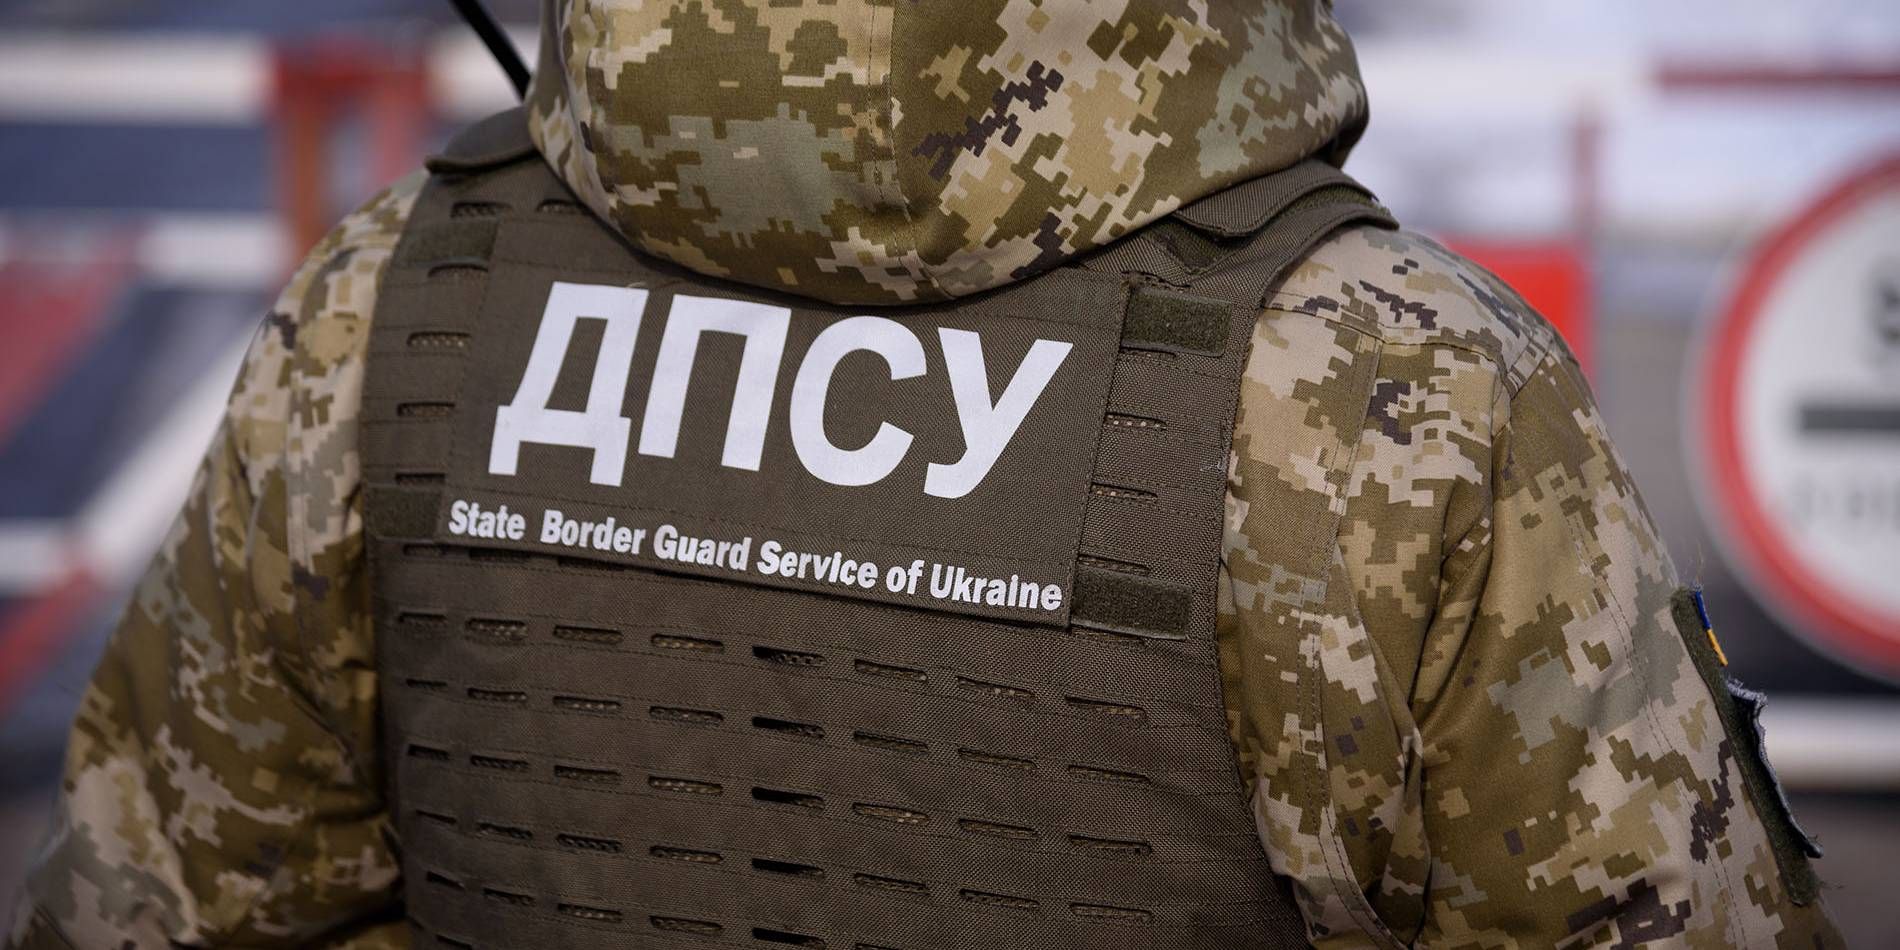 Выезд Саакашвили из Украины: проверка пограничников закончилась дисциплинаркой